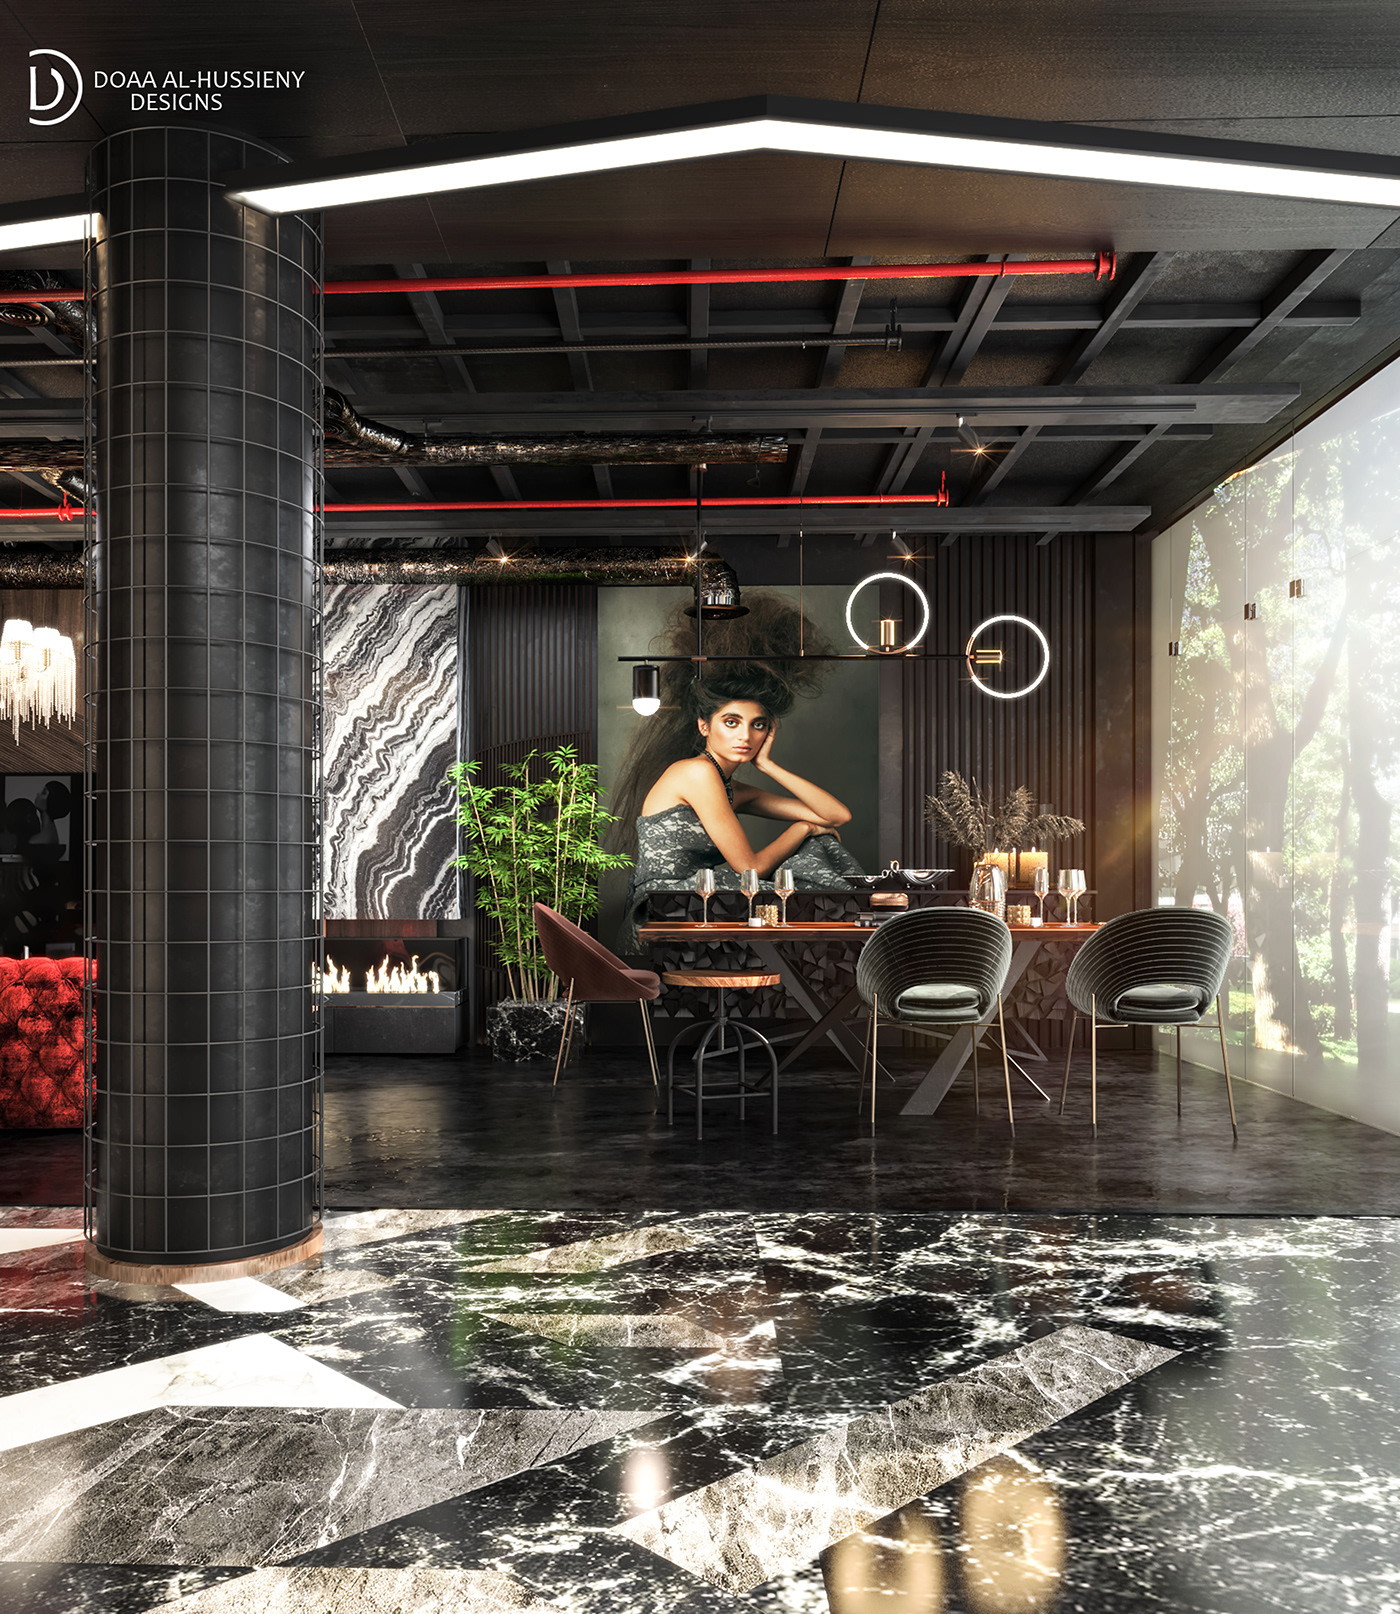 3ds max Autodesk architecture visualization interior design  Render vray archviz CGI modern